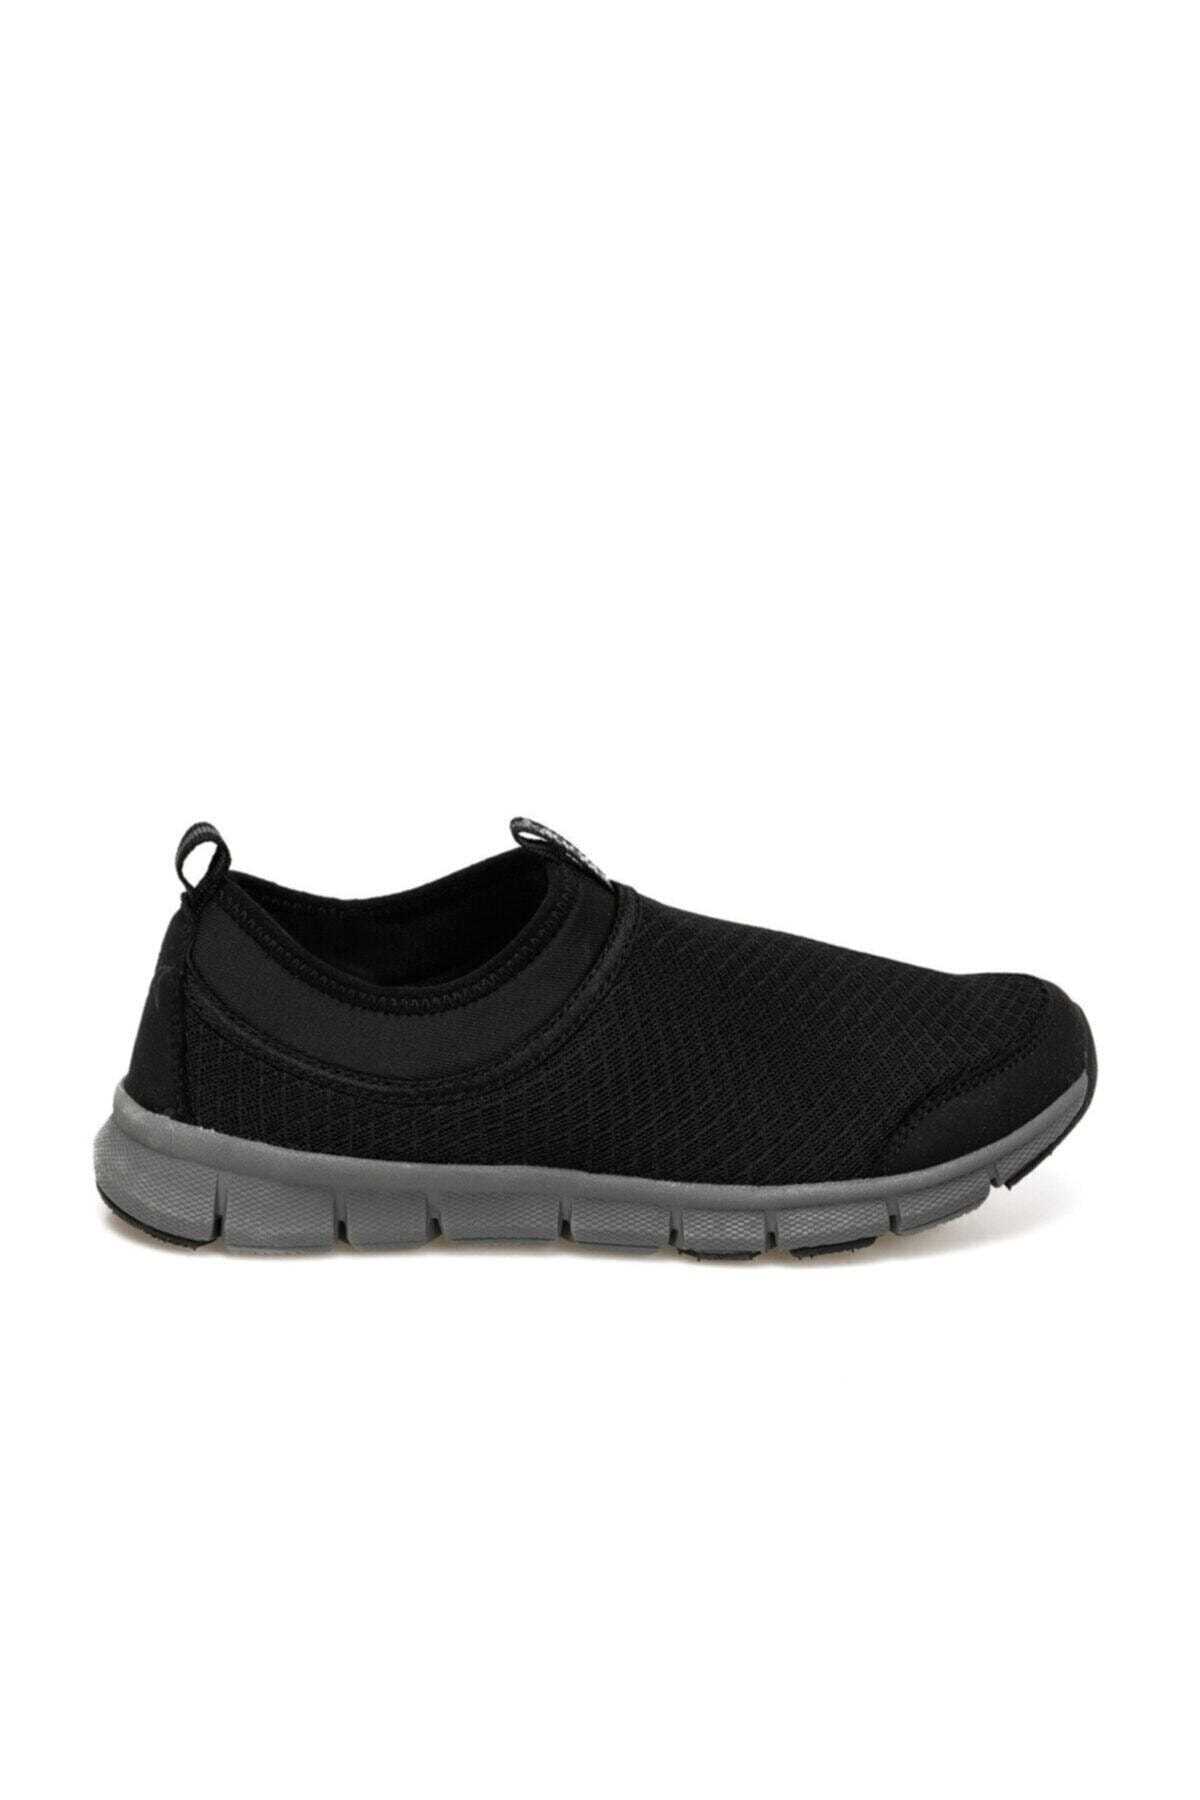 خرید انلاین کفش مخصوص پیاده روی زیبا مردانه برند کینتیکس kinetix رنگ مشکی کد ty55867915